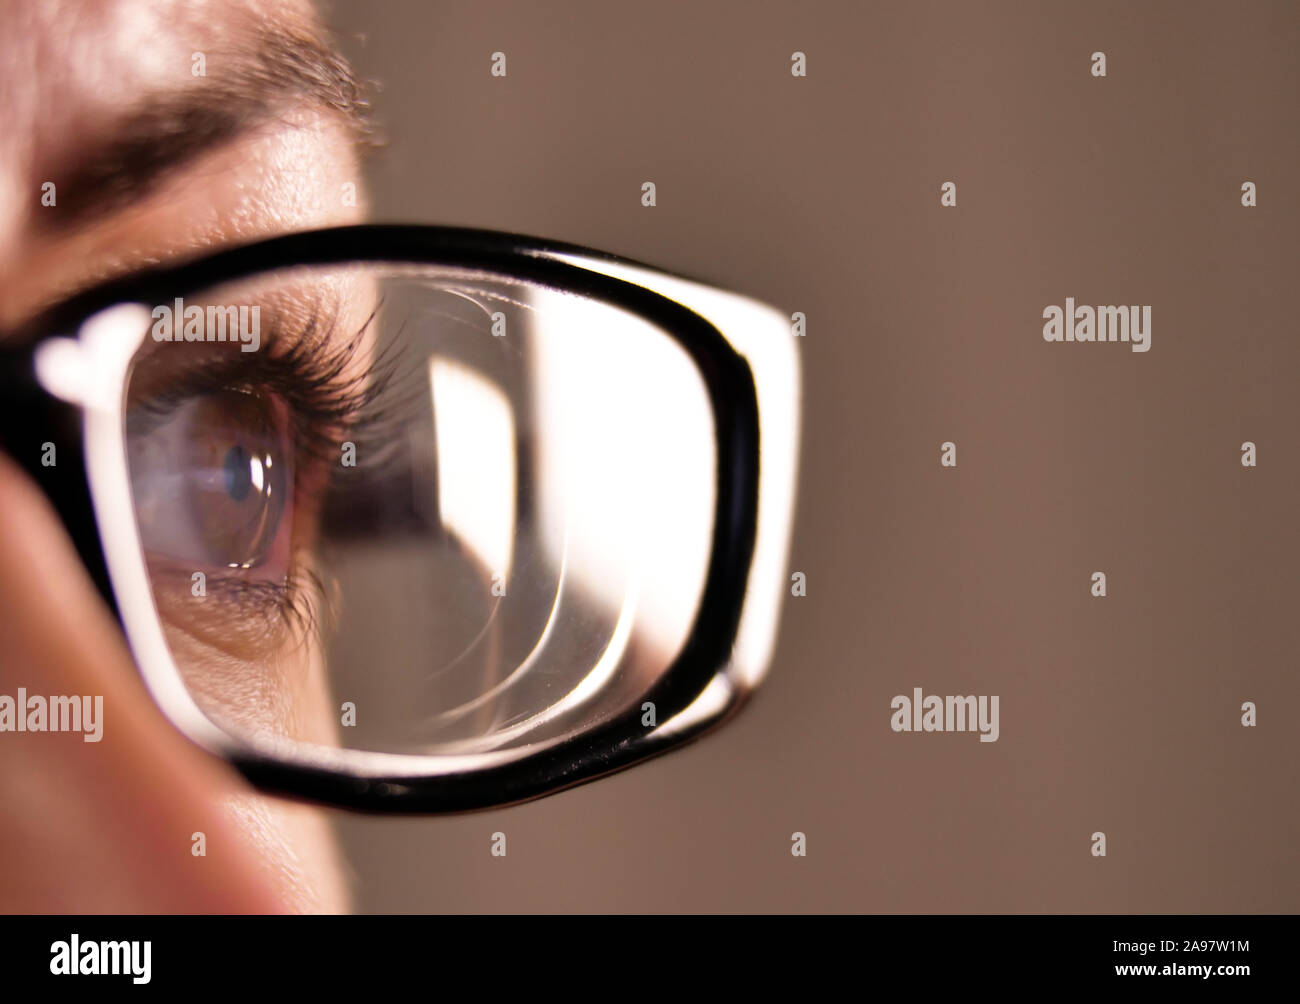 Ouvrez grand les yeux bruns d'une fille avec des lunettes avec un cadre noir sur fond gris Banque D'Images